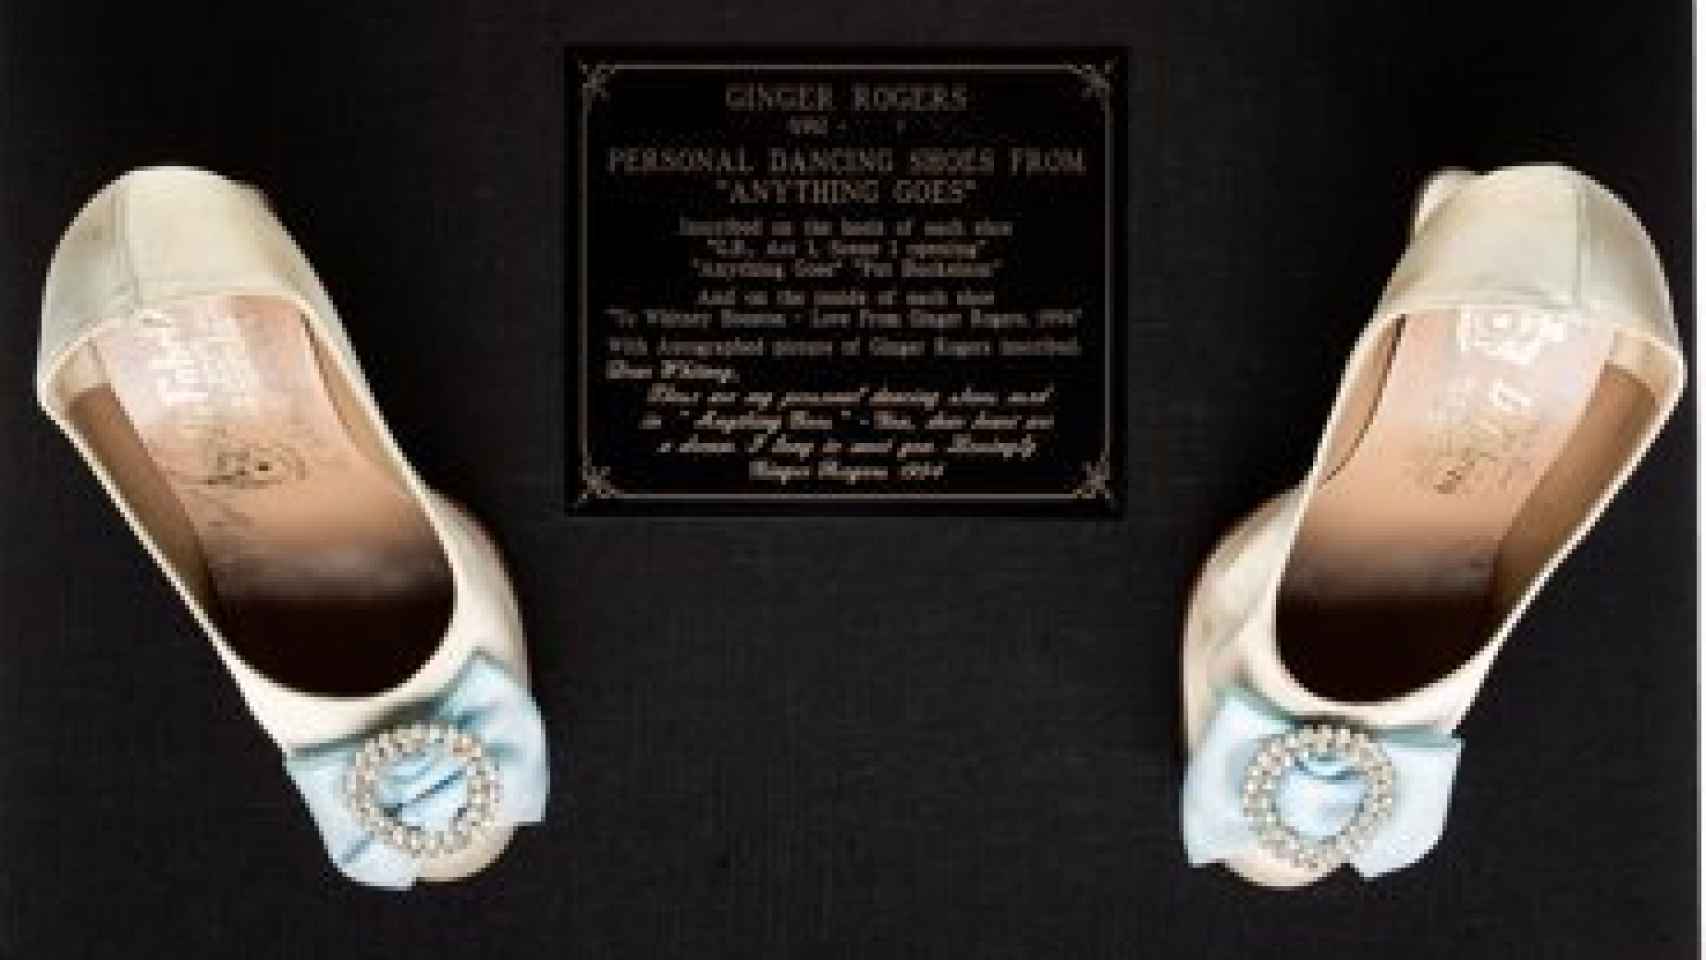 Zapatos de Ginger Rogers que guardaba Houston